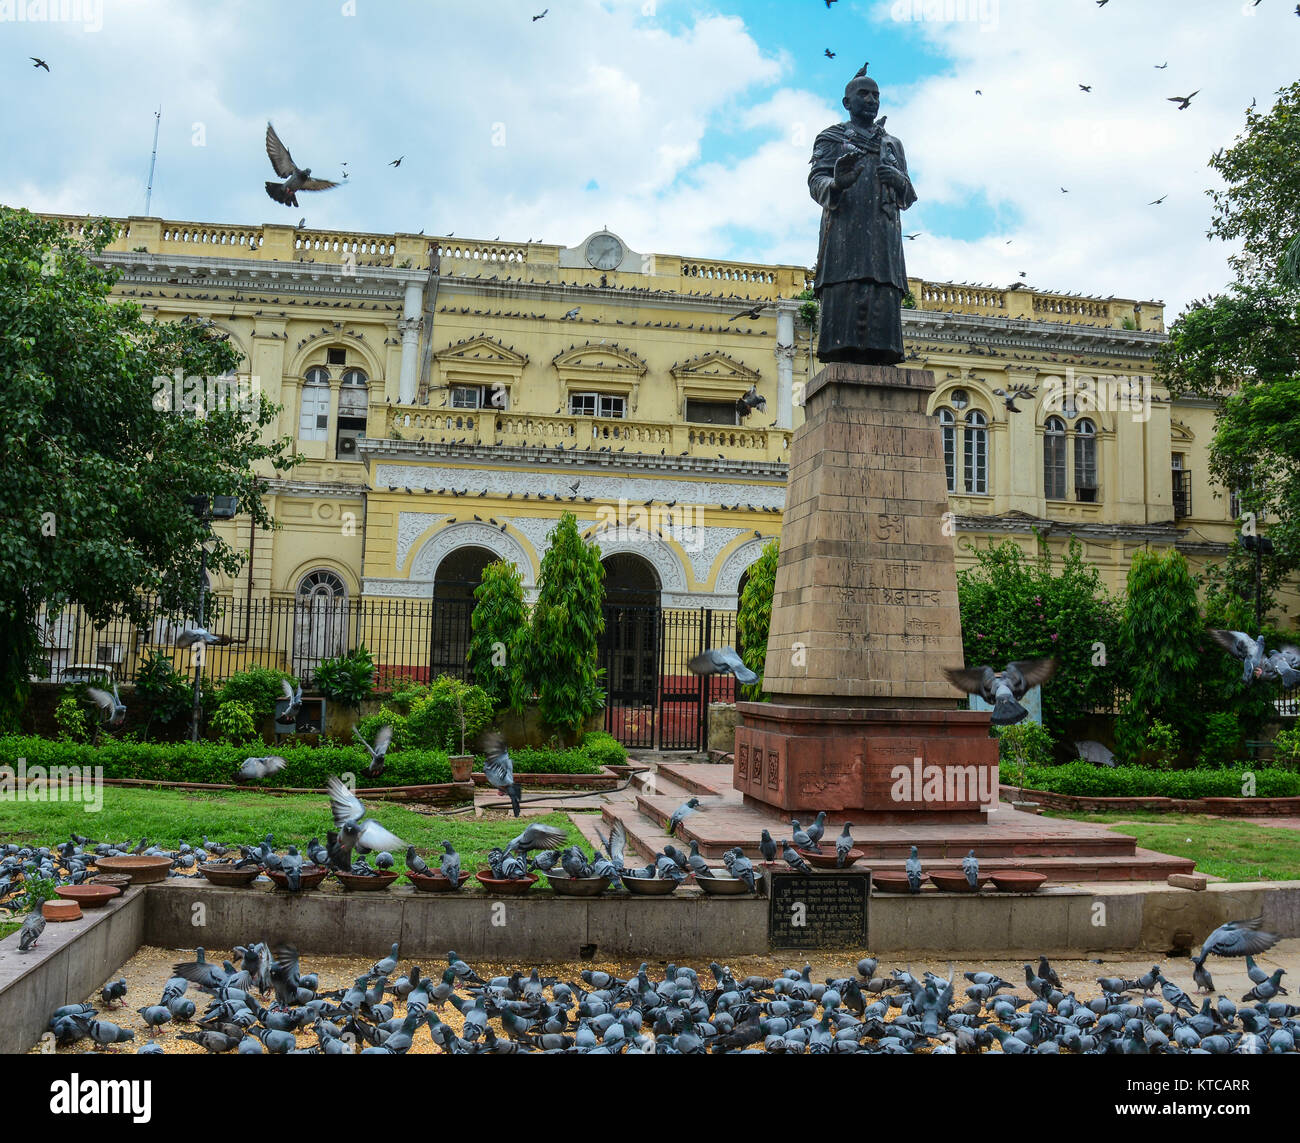 Estatua de Mahatma Gandhi con muchas palomas en el centro del casco antiguo de Delhi, India. Delhi es la capital de la India y la segunda ciudad más poblada en el COU Foto de stock